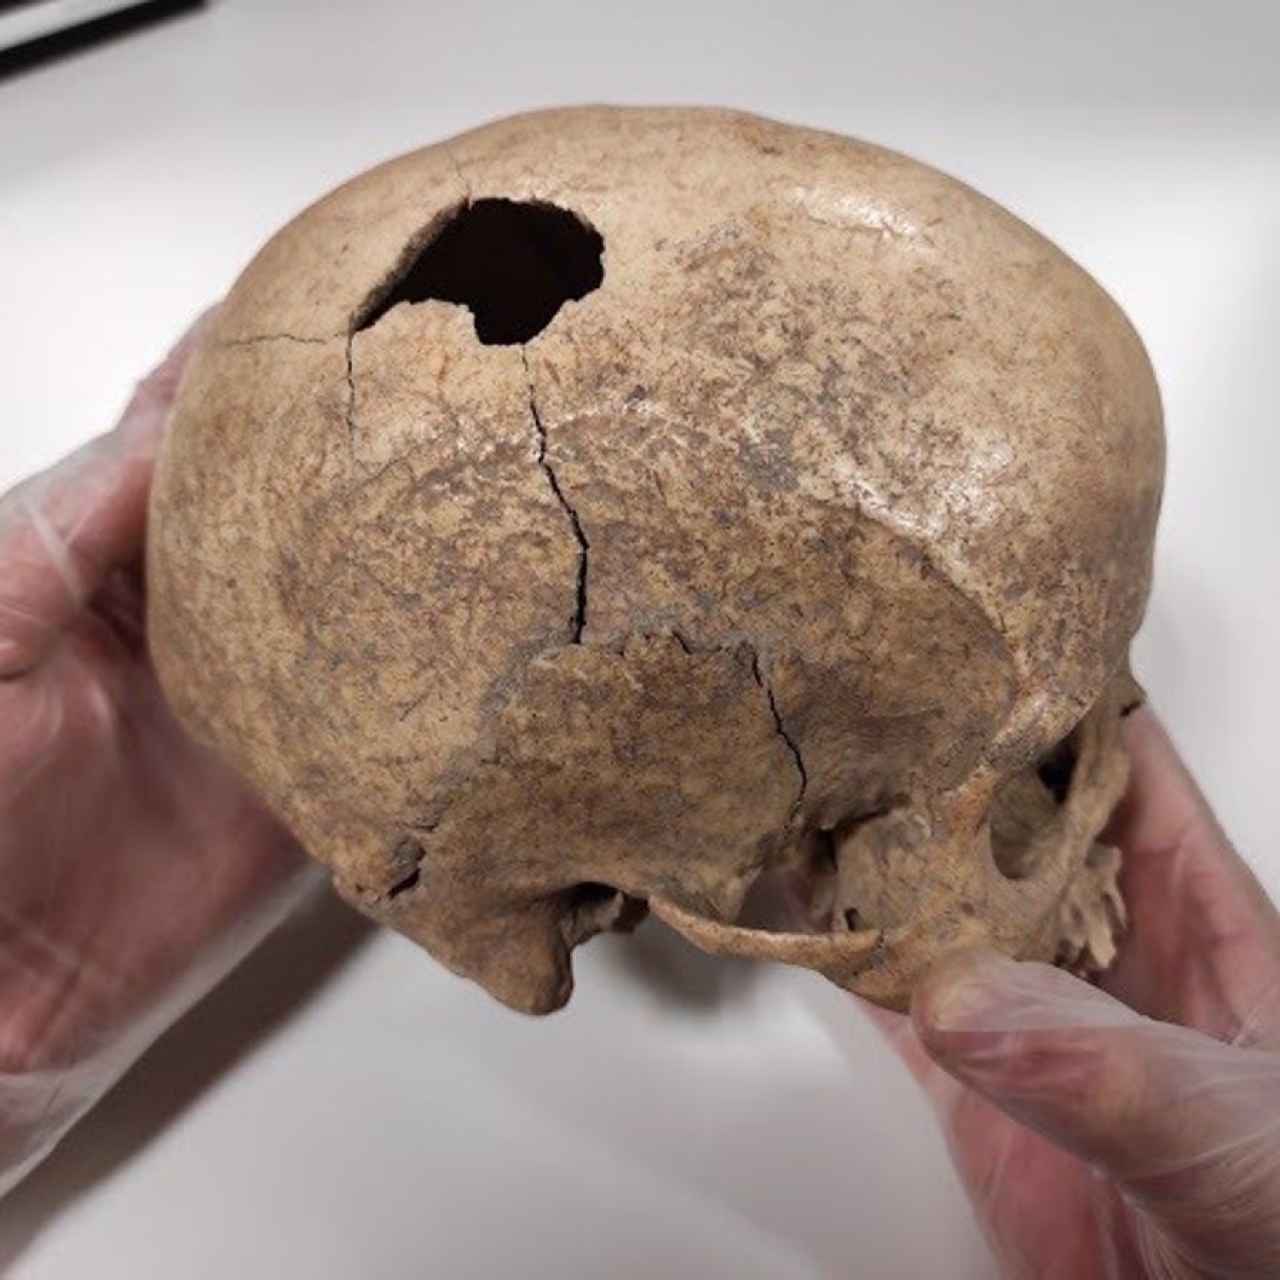 Cráneo encontrado en la Cova foradada